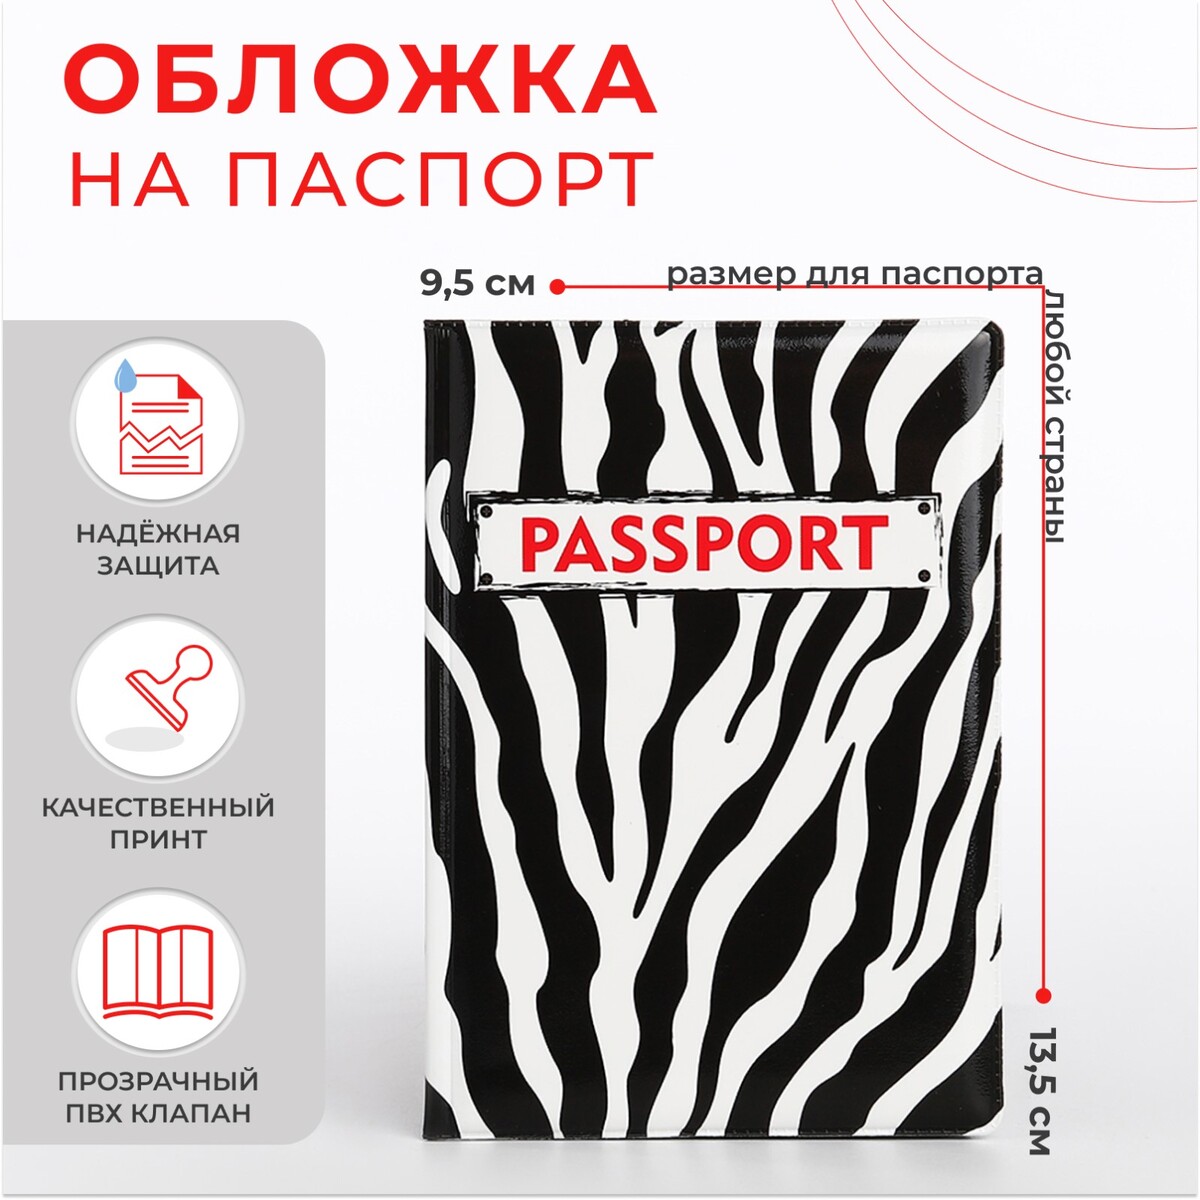 Обложка для паспорта, цвет черный/белый обложка для паспорта рик и морти огурчик рик